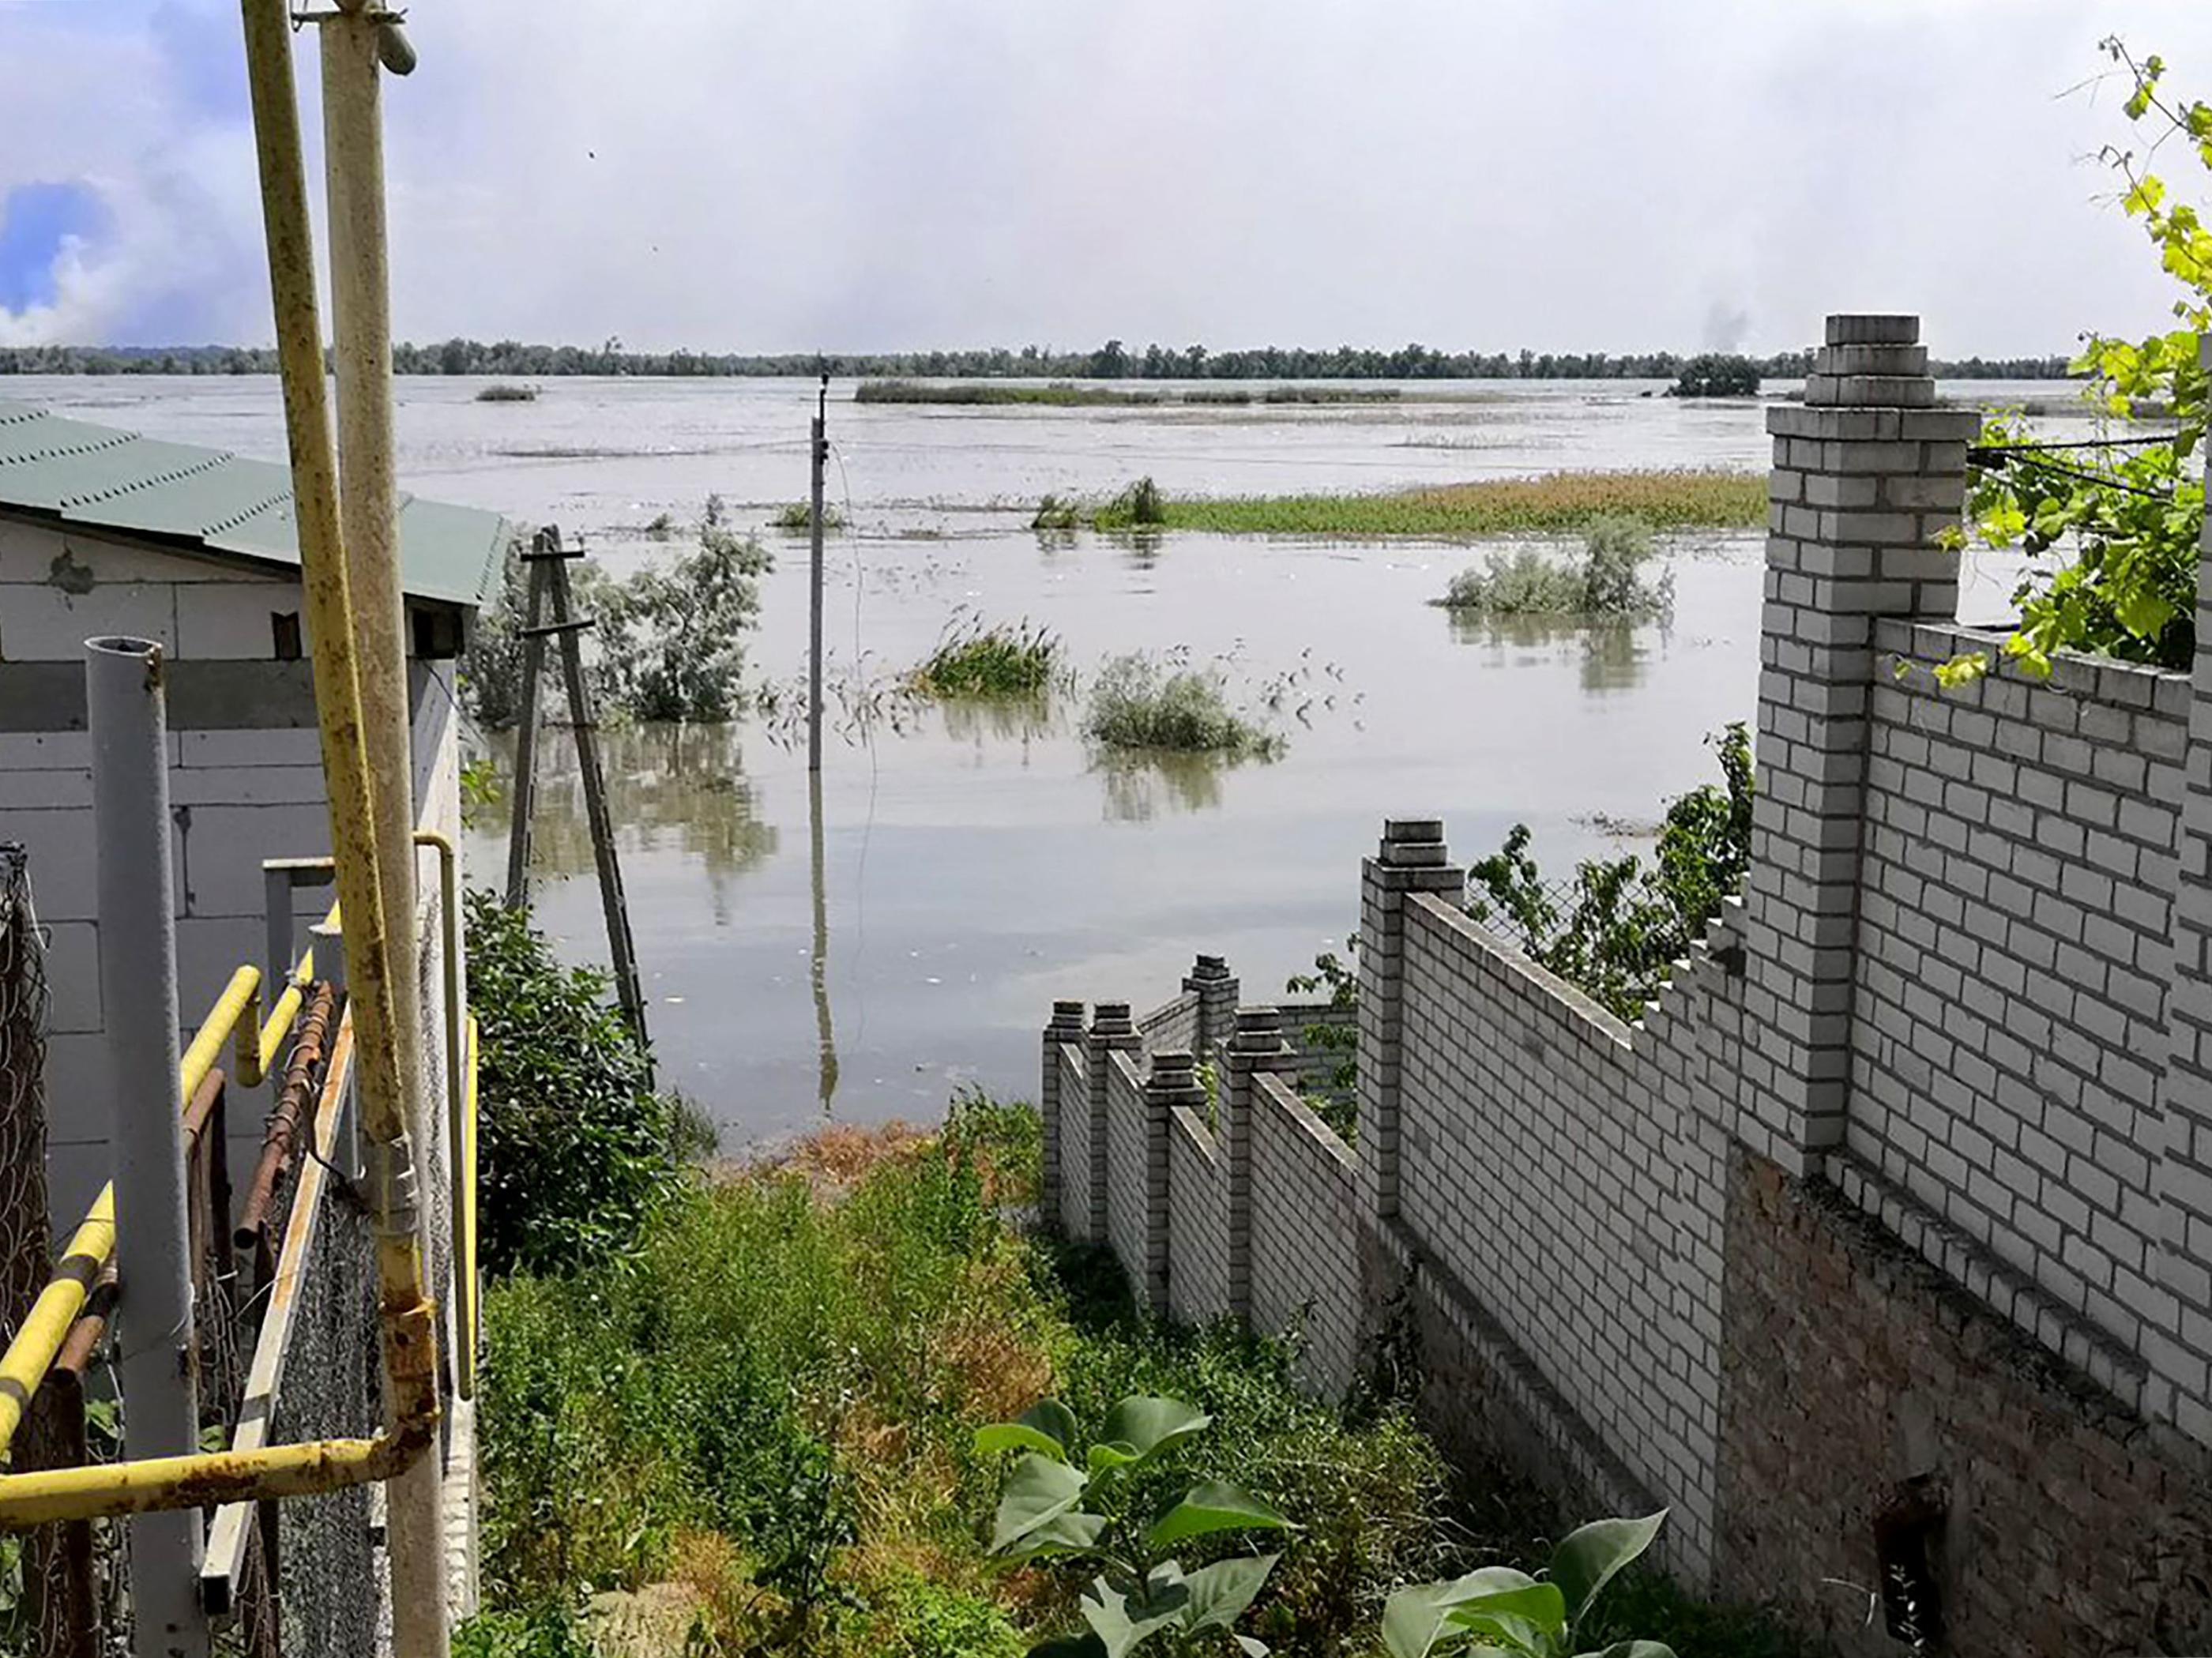 La zone de Kherson a été touchée par des inondations après l'explosion ayant endommagé le barrage de Kakhovska, dans le sud de l'Ukraine. AFP/Oleg Tuchynsky